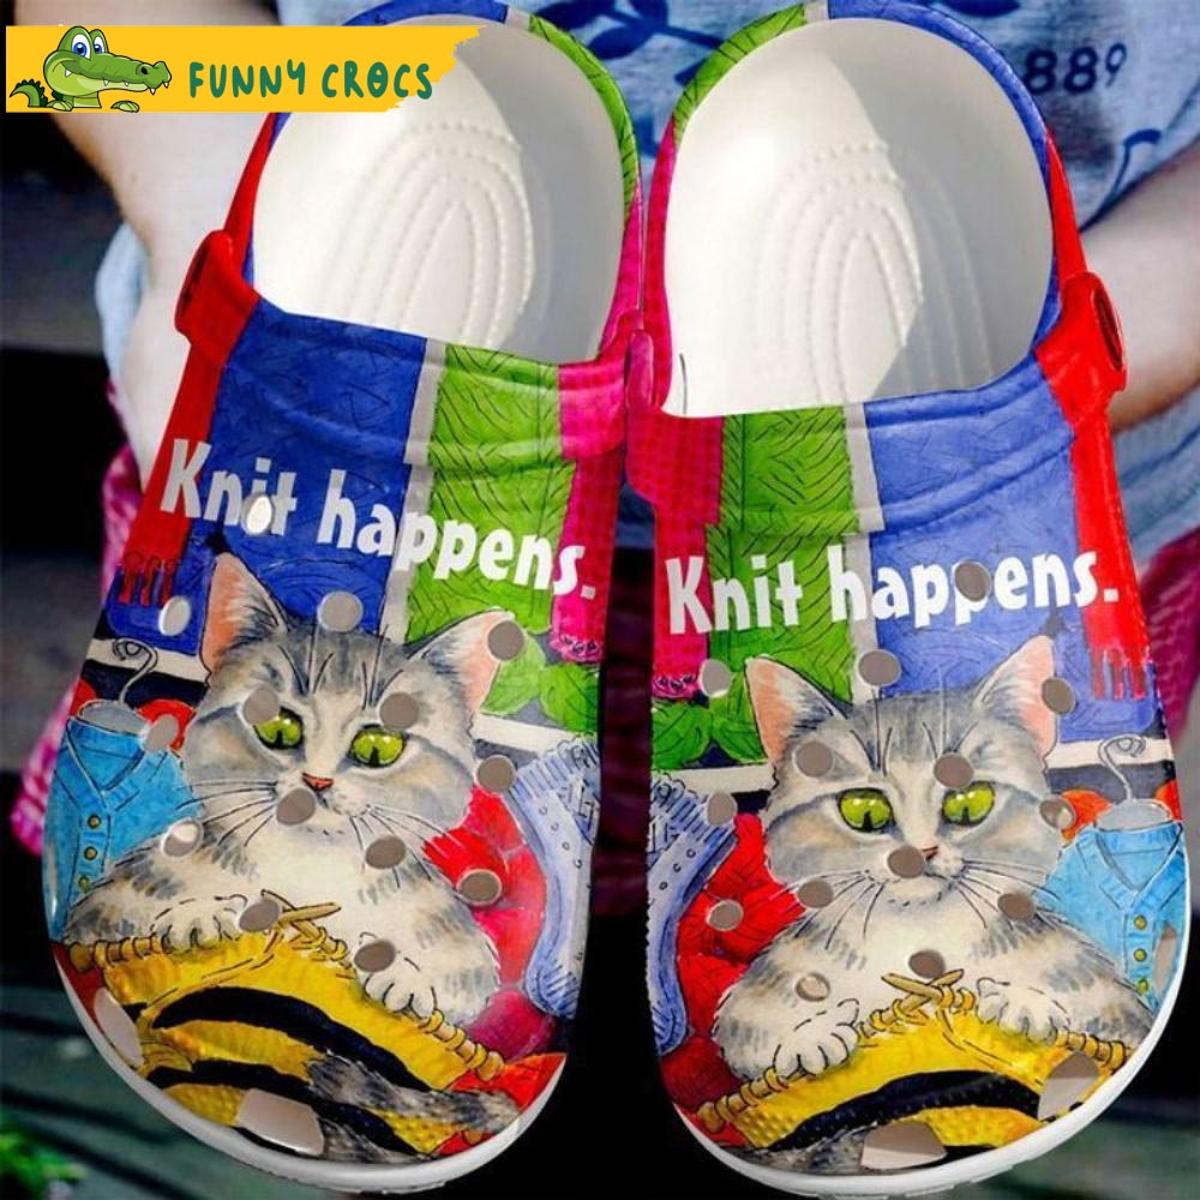 Funny Face Cat Flower Crocs Shoes